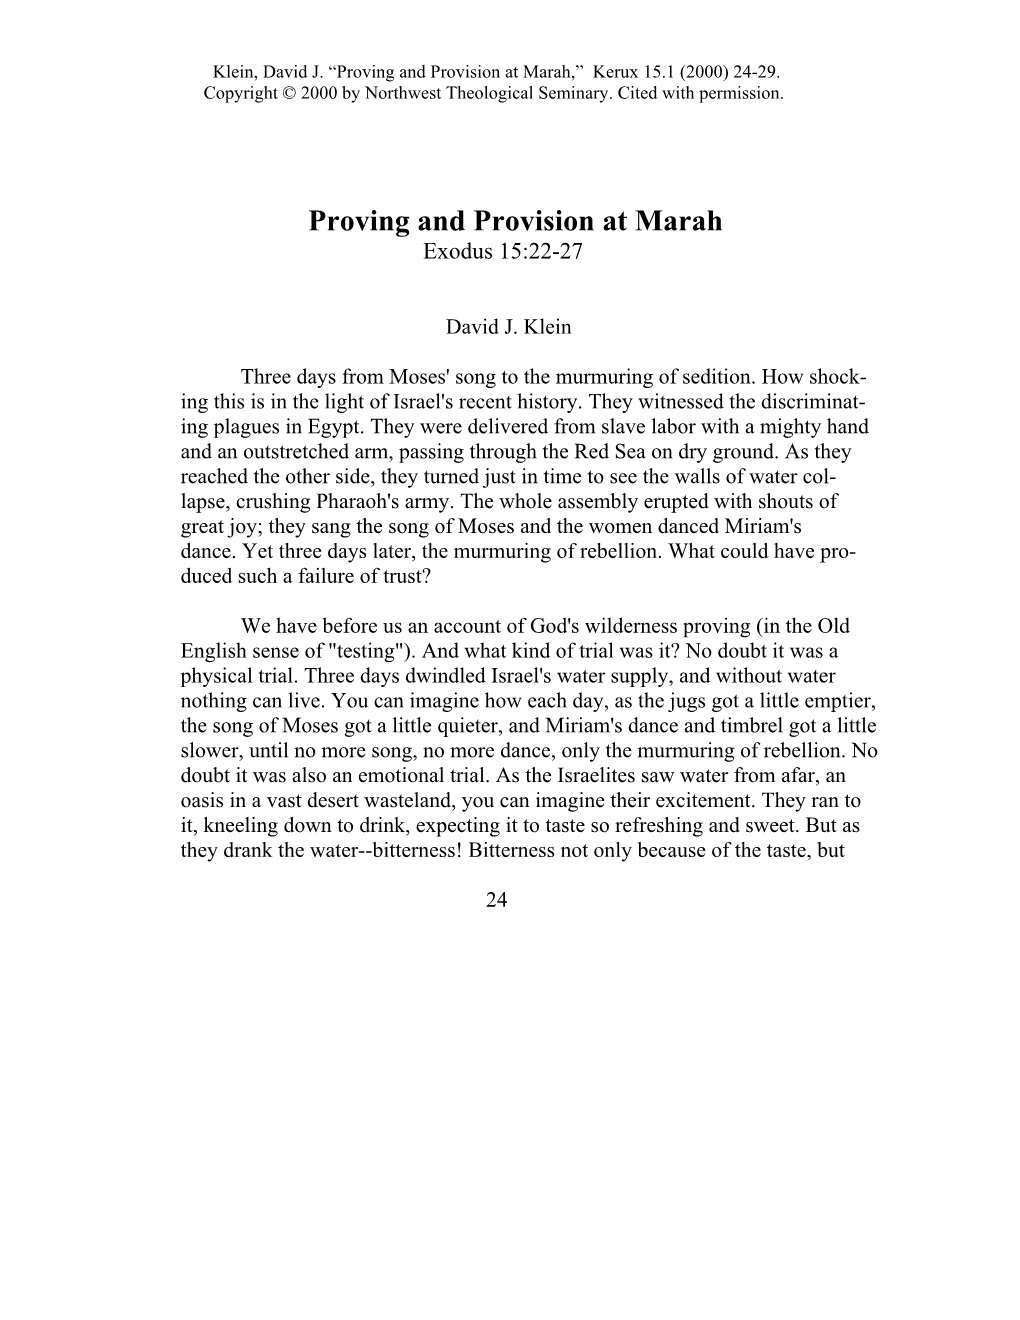 Proving and Provision at Marah,” Kerux 15.1 (2000) 24-29